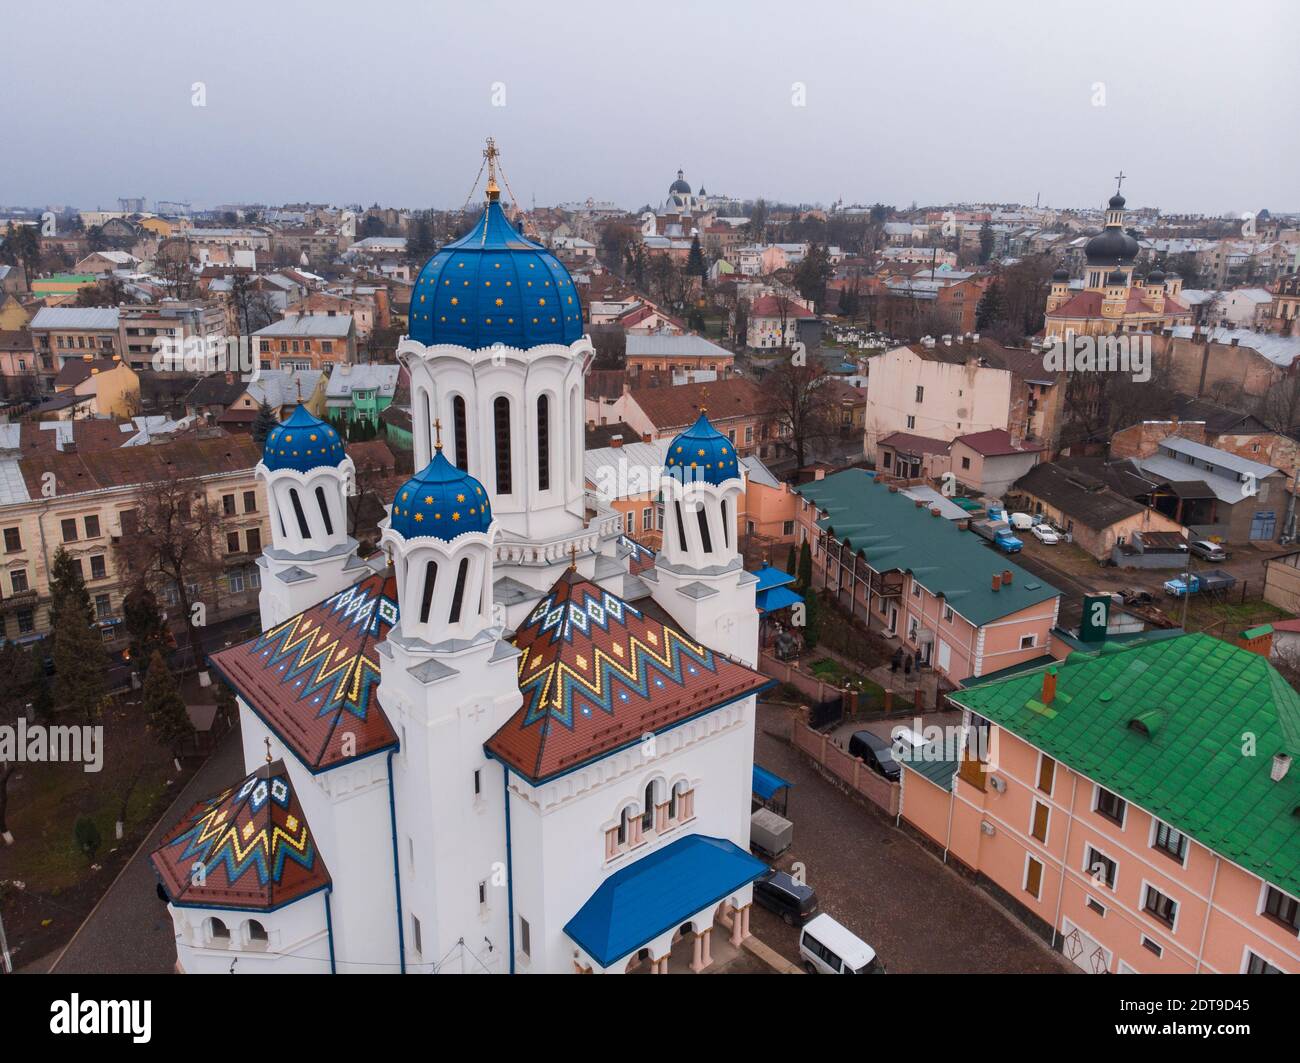 Images de Drone aériennes de dômes torsadés de la cathédrale Saint-Nicolas, alias Eglise ivre de Chernovtsi, Ukraine Banque D'Images